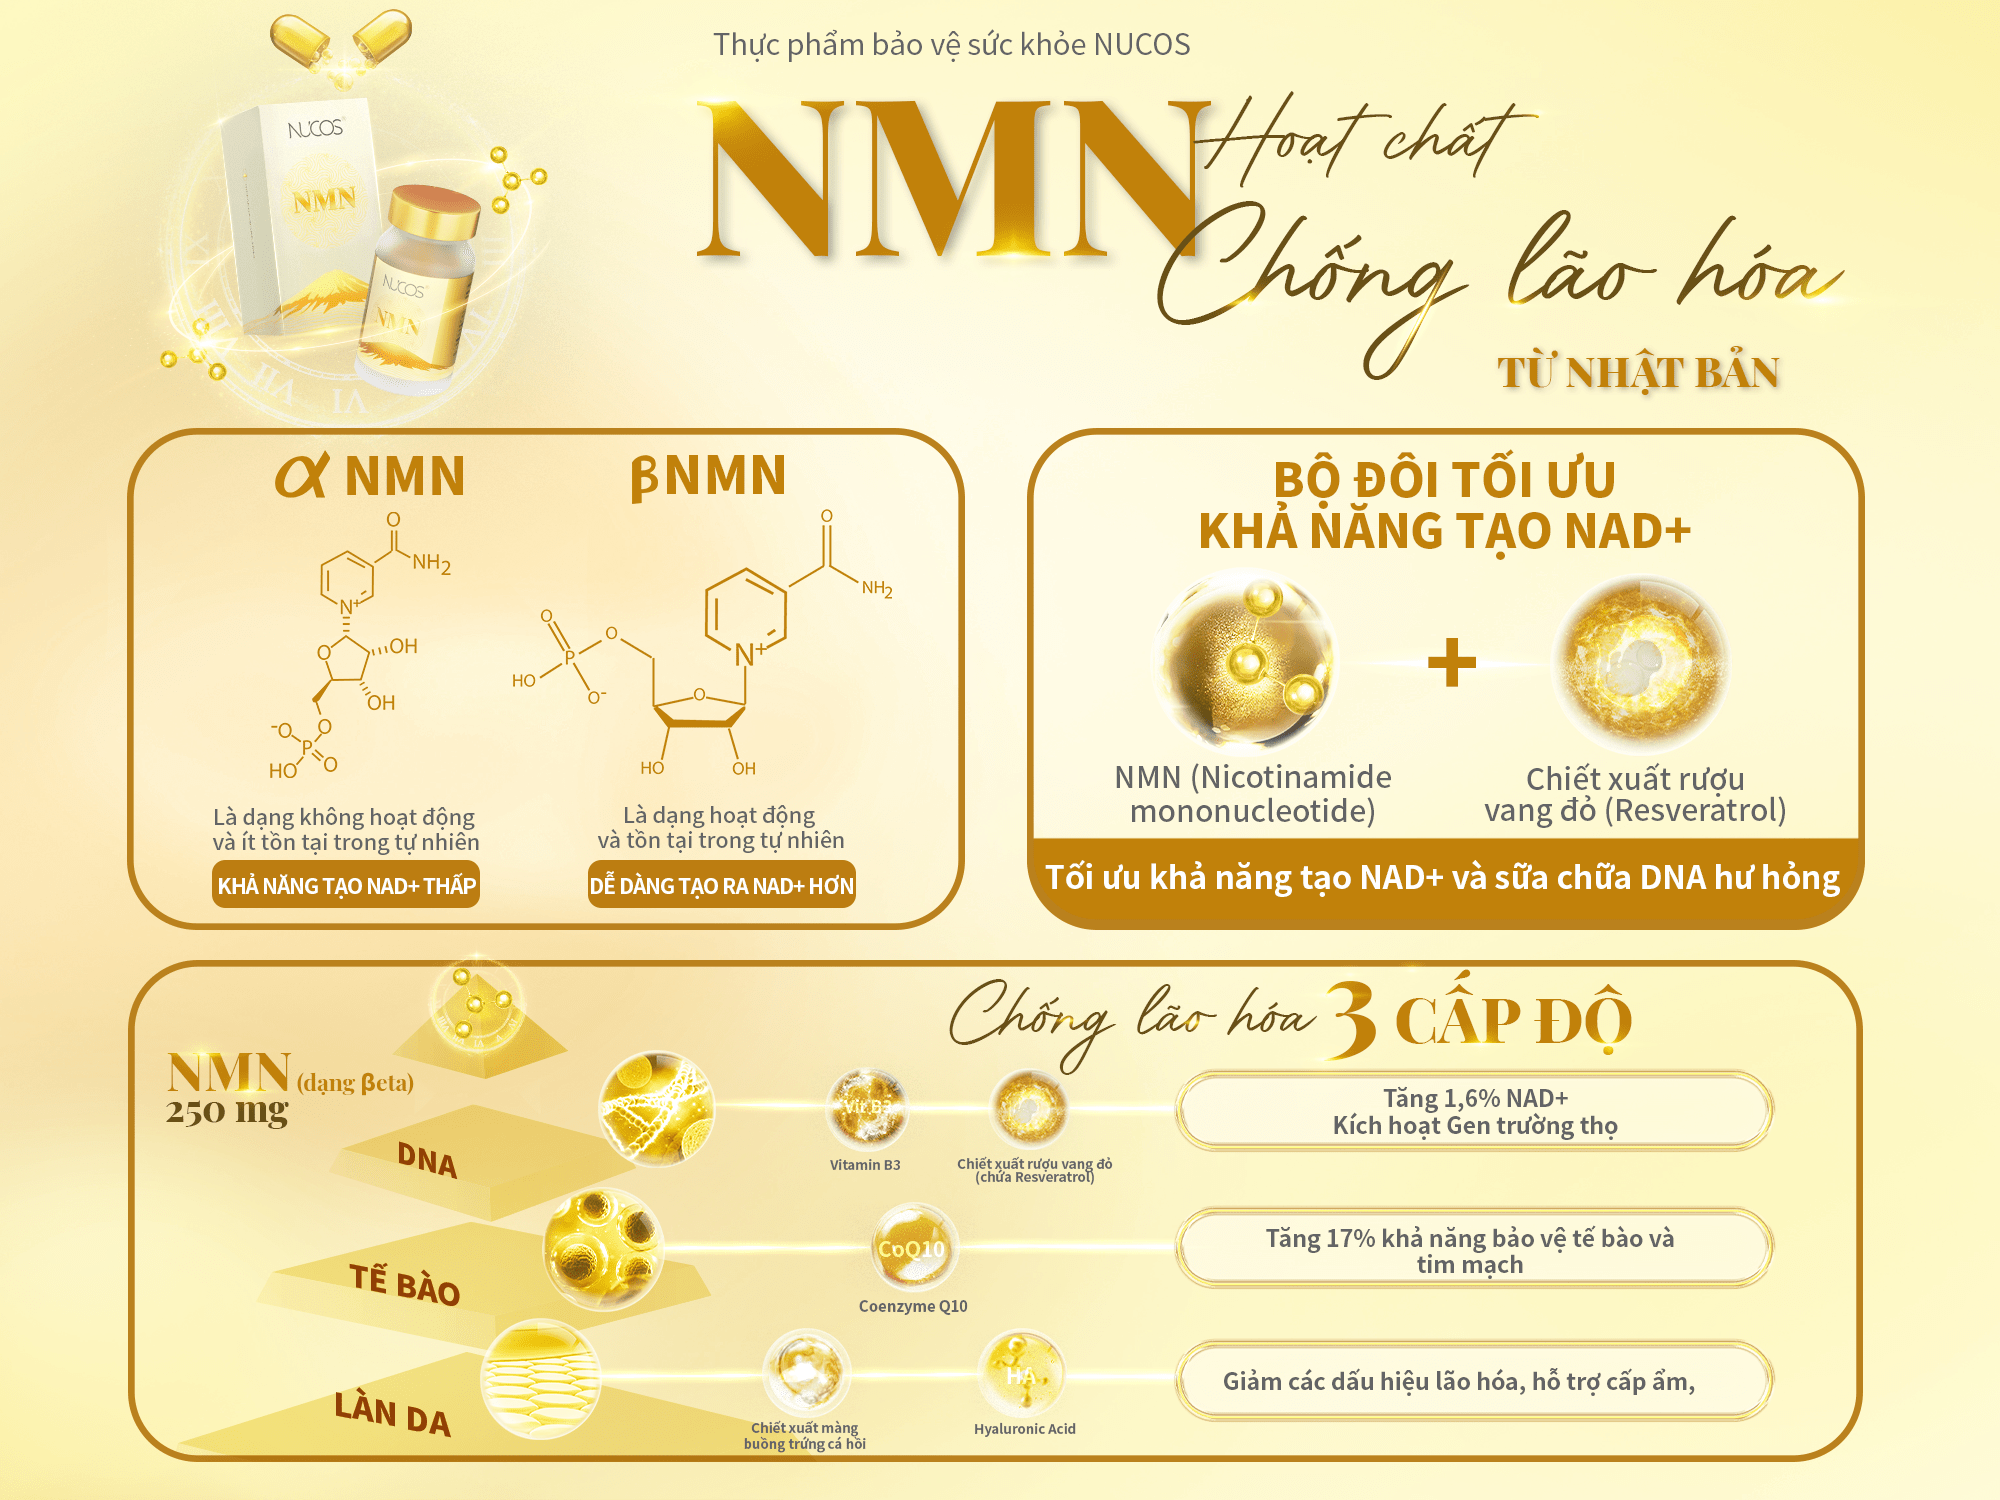 Nucos NMN được thiết kế với công thức chuẩn hàm lượng NMN 250 mg/ ngày cho 2 viên